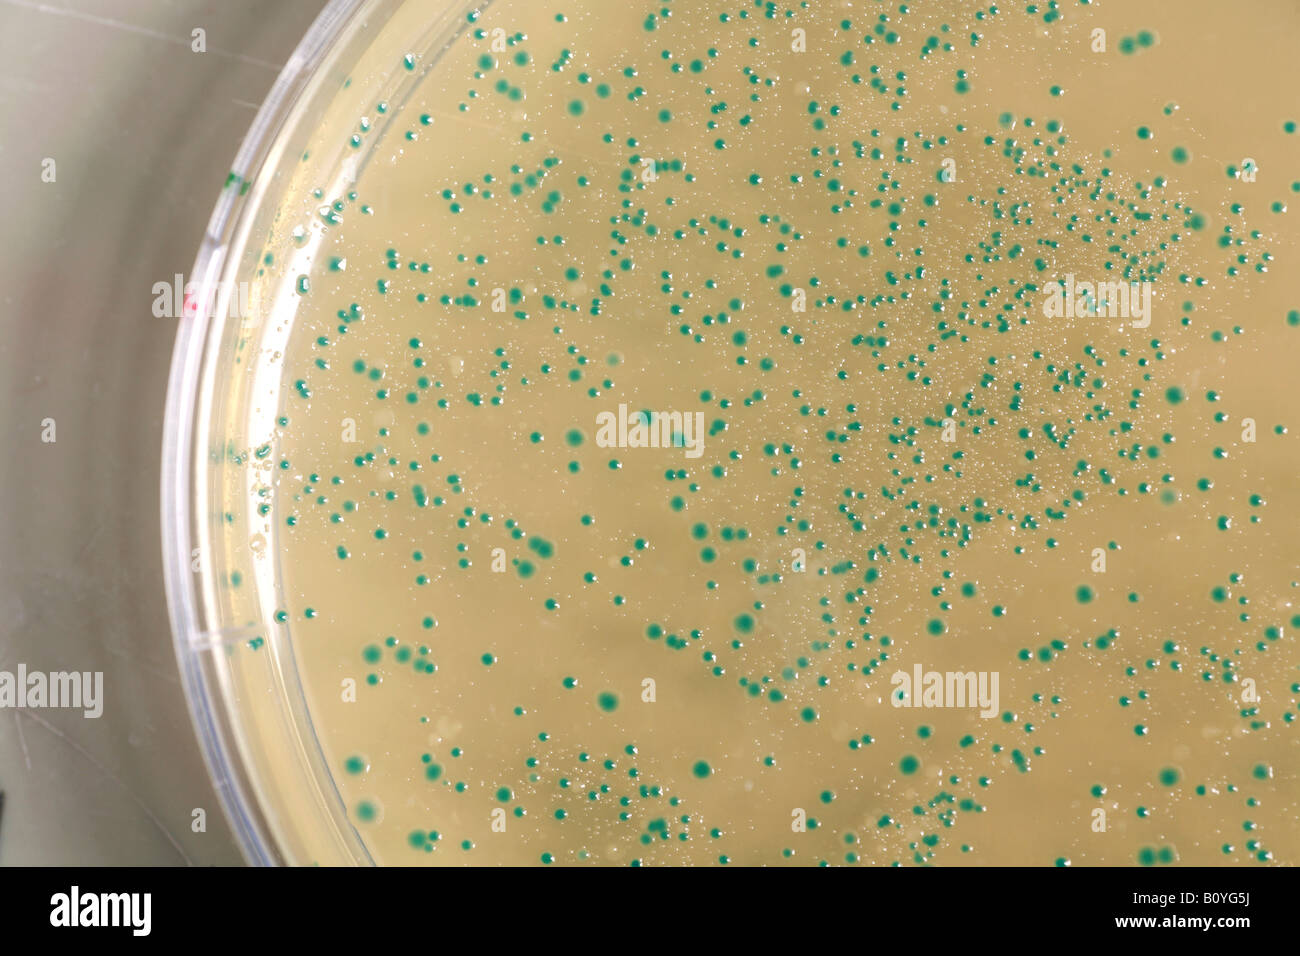 Antibiotics in Petri dish Stock Photo